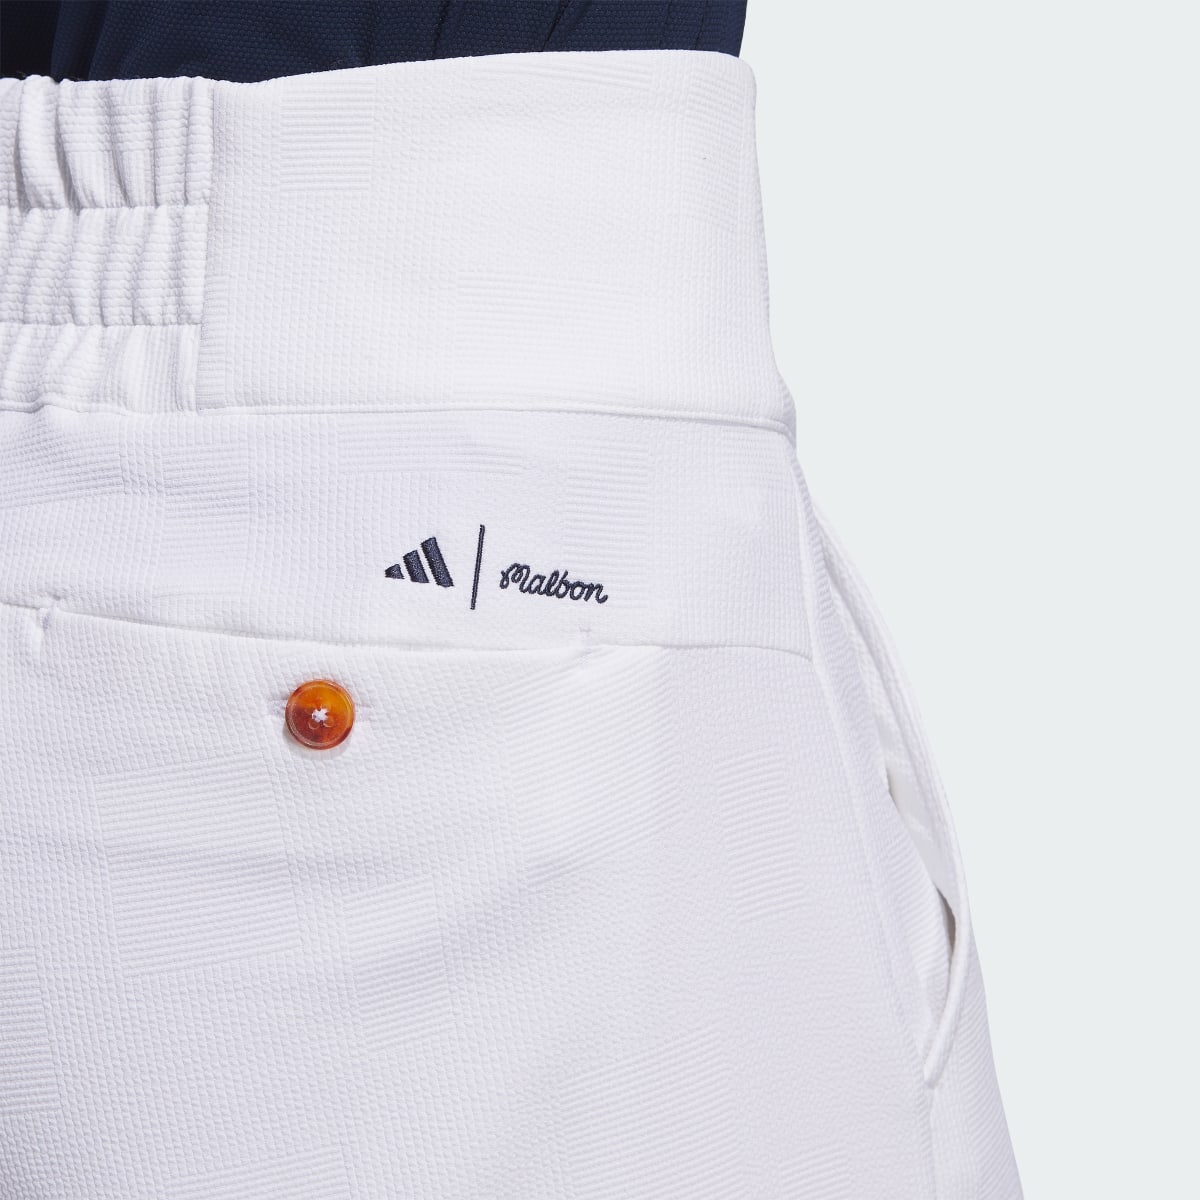 Adidas Spodnie adidas x Malbon Culotte. 7